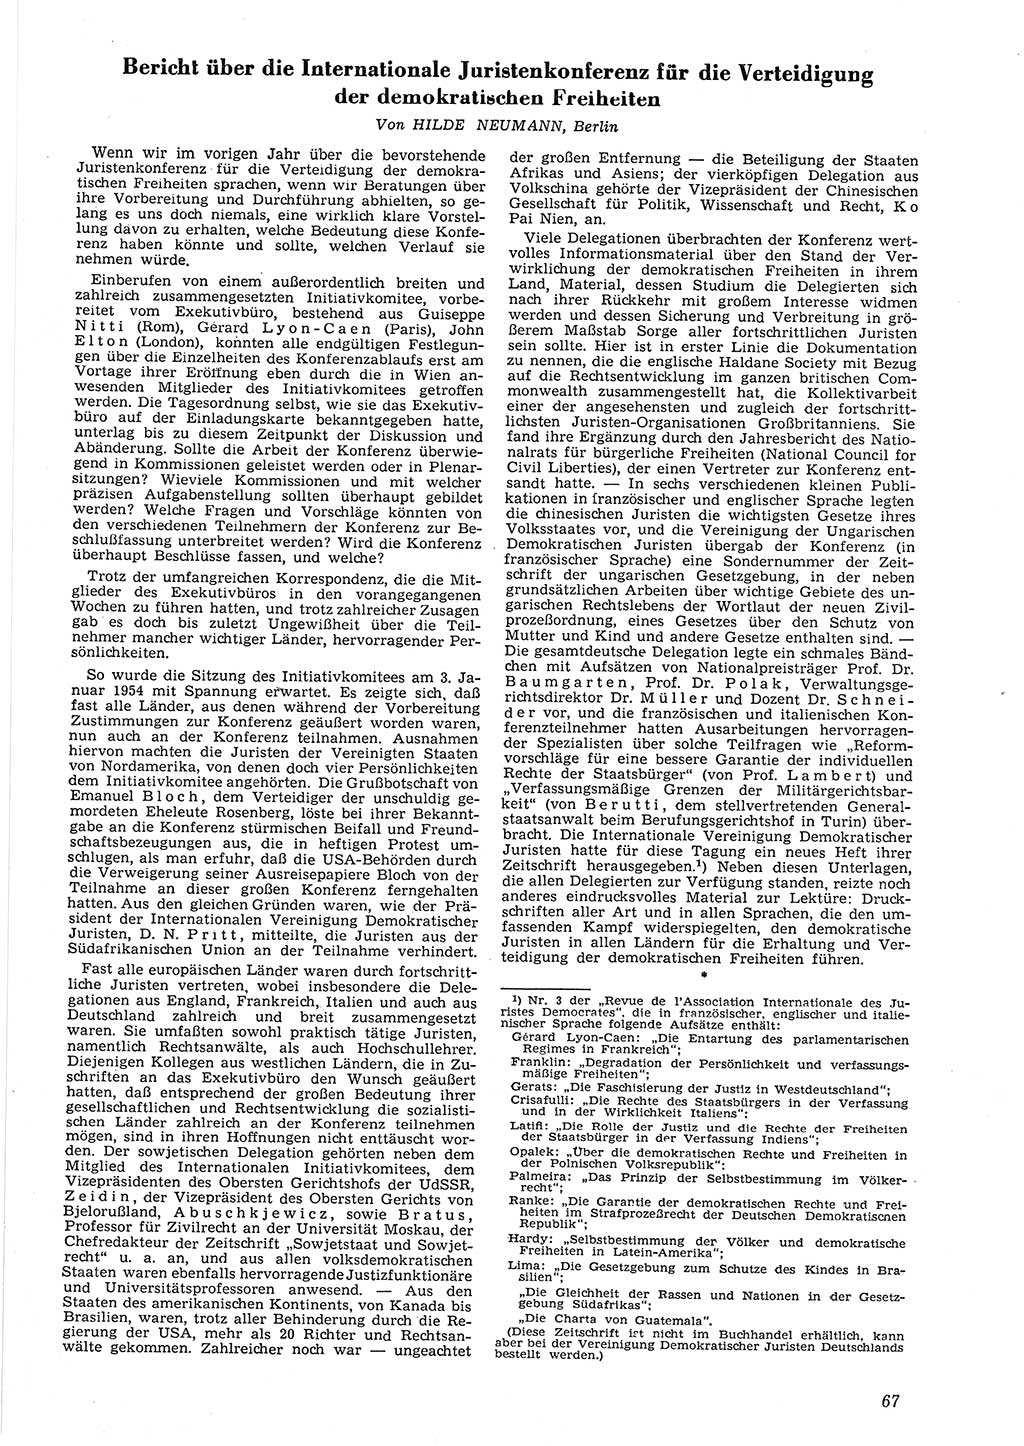 Neue Justiz (NJ), Zeitschrift für Recht und Rechtswissenschaft [Deutsche Demokratische Republik (DDR)], 8. Jahrgang 1954, Seite 67 (NJ DDR 1954, S. 67)